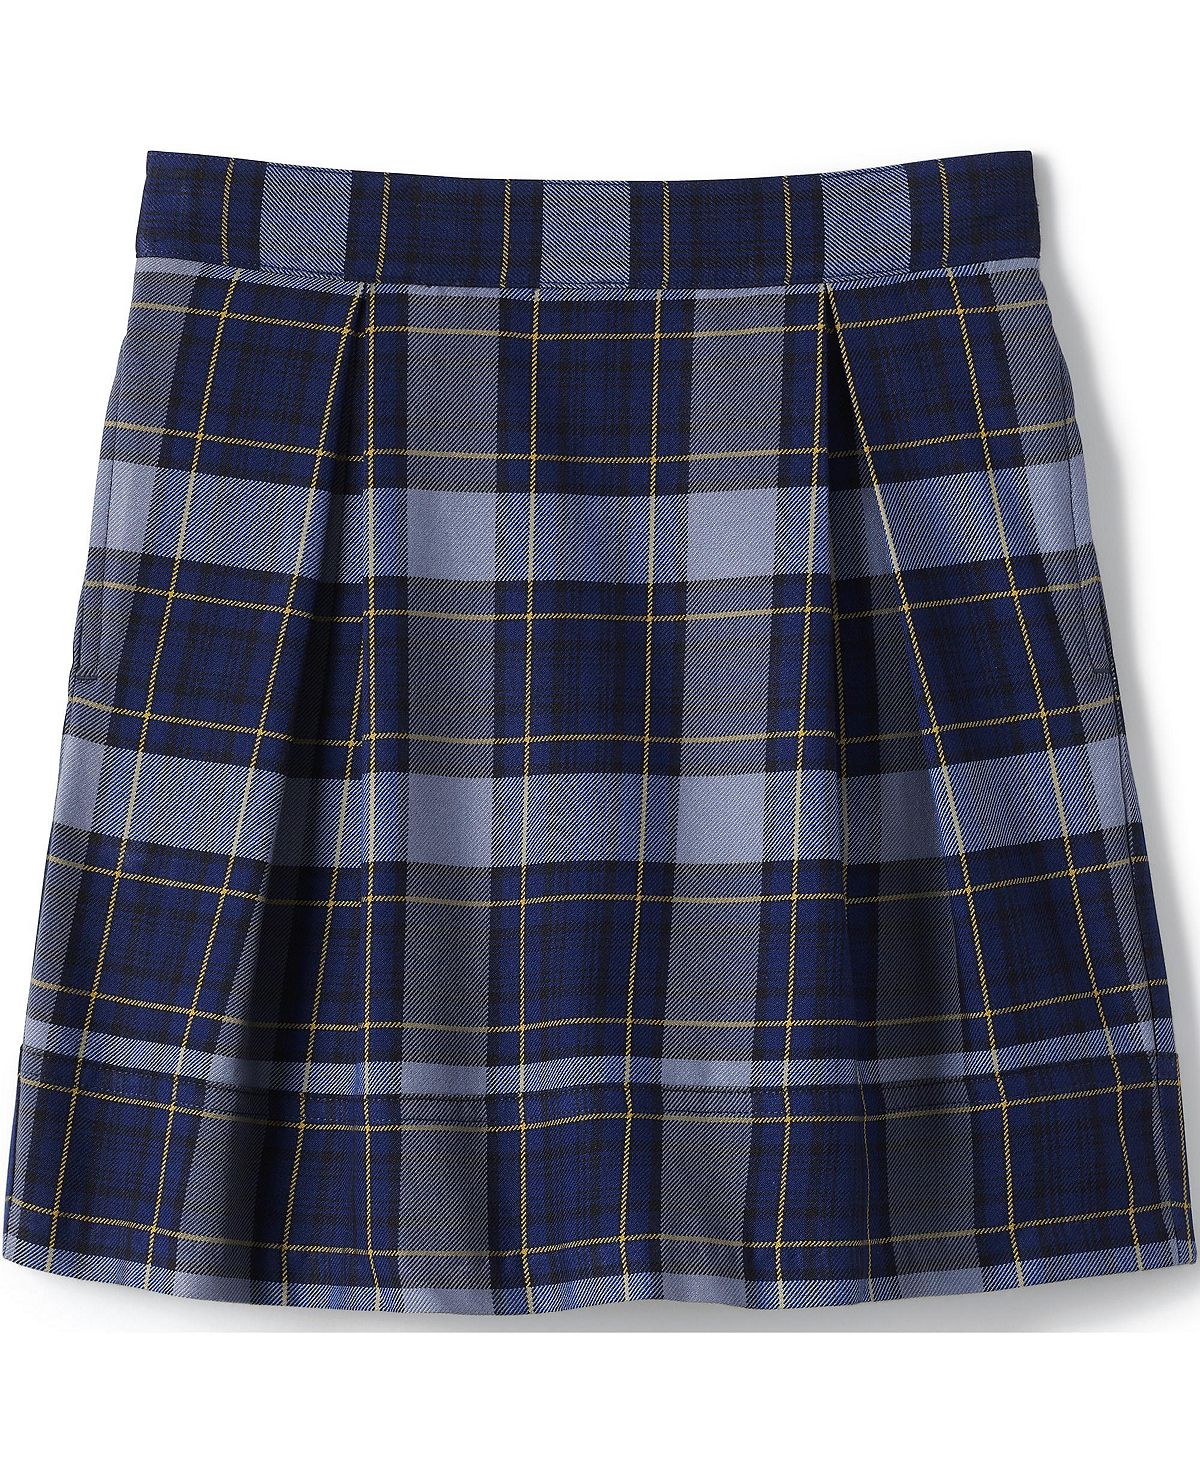 Школьная форма для девочек, клетчатая плиссированная юбка до колена Lands' End детская униформа для девочек плиссированная юбка школьная форма в японском стиле с завышенной талией клетчатая юбка трапеция милый комп